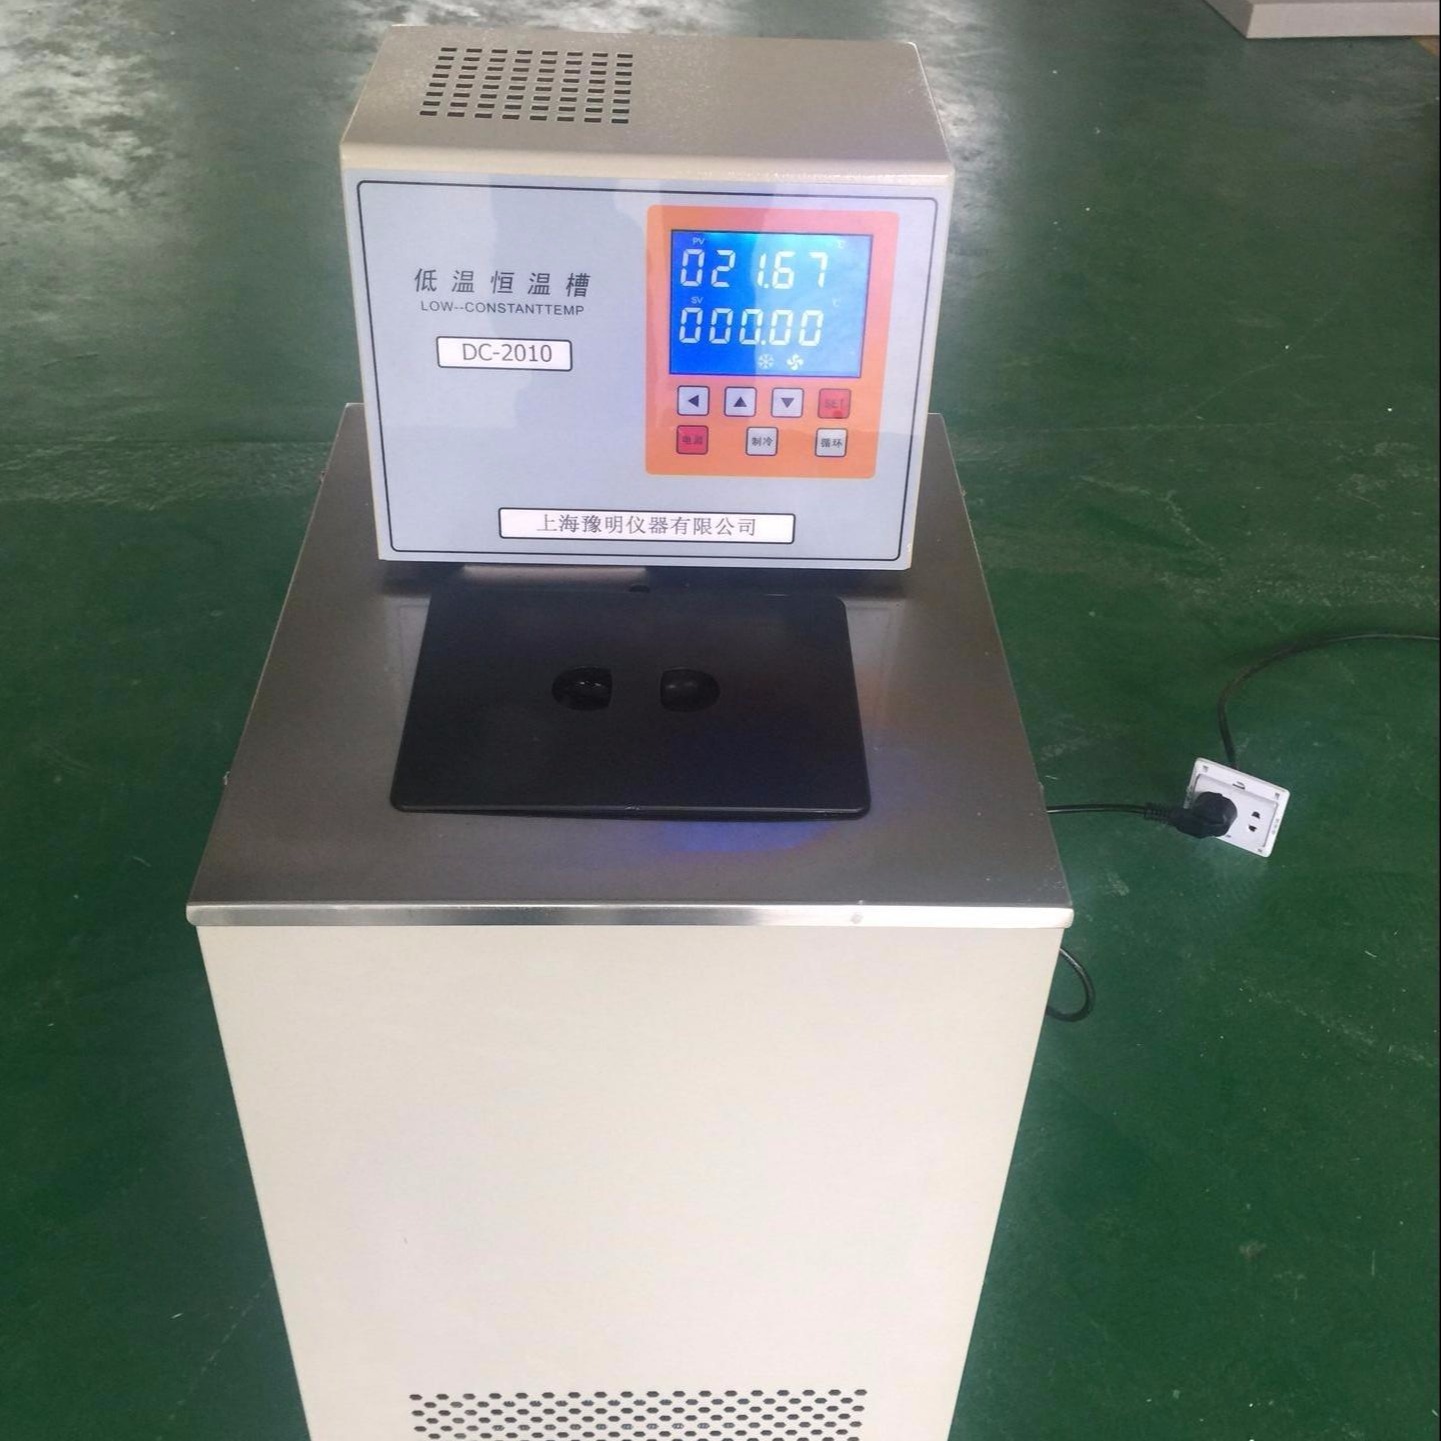 上海豫明供应恒温槽 立式恒温水槽DC-1020 低温冷却循环水机 低温恒温槽 高精度数显恒温水槽